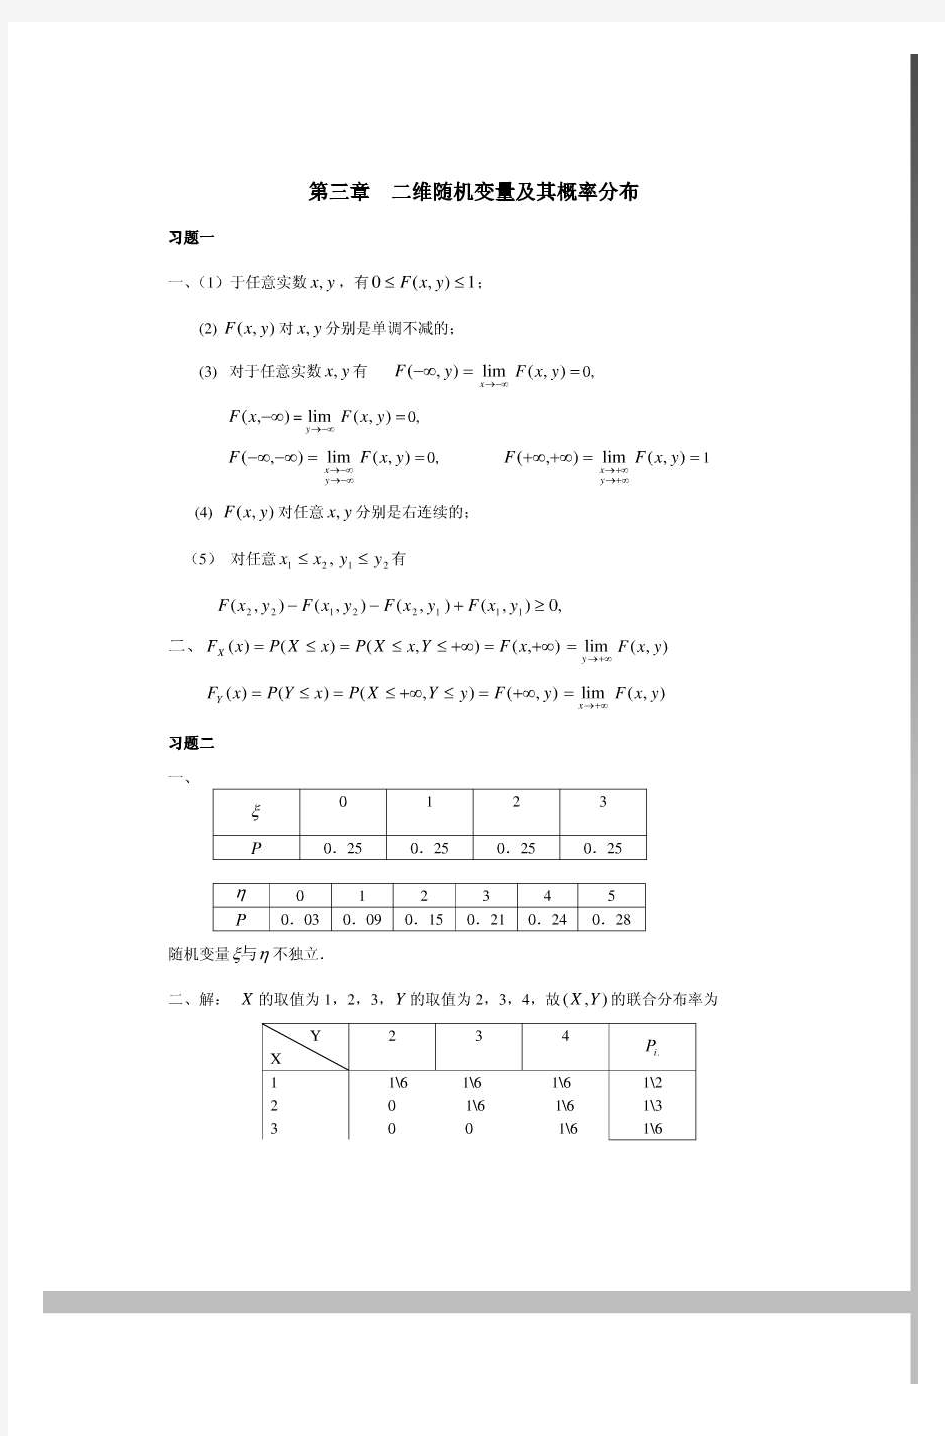 第三章习题答案  二维随机变量及其概率分布(1)